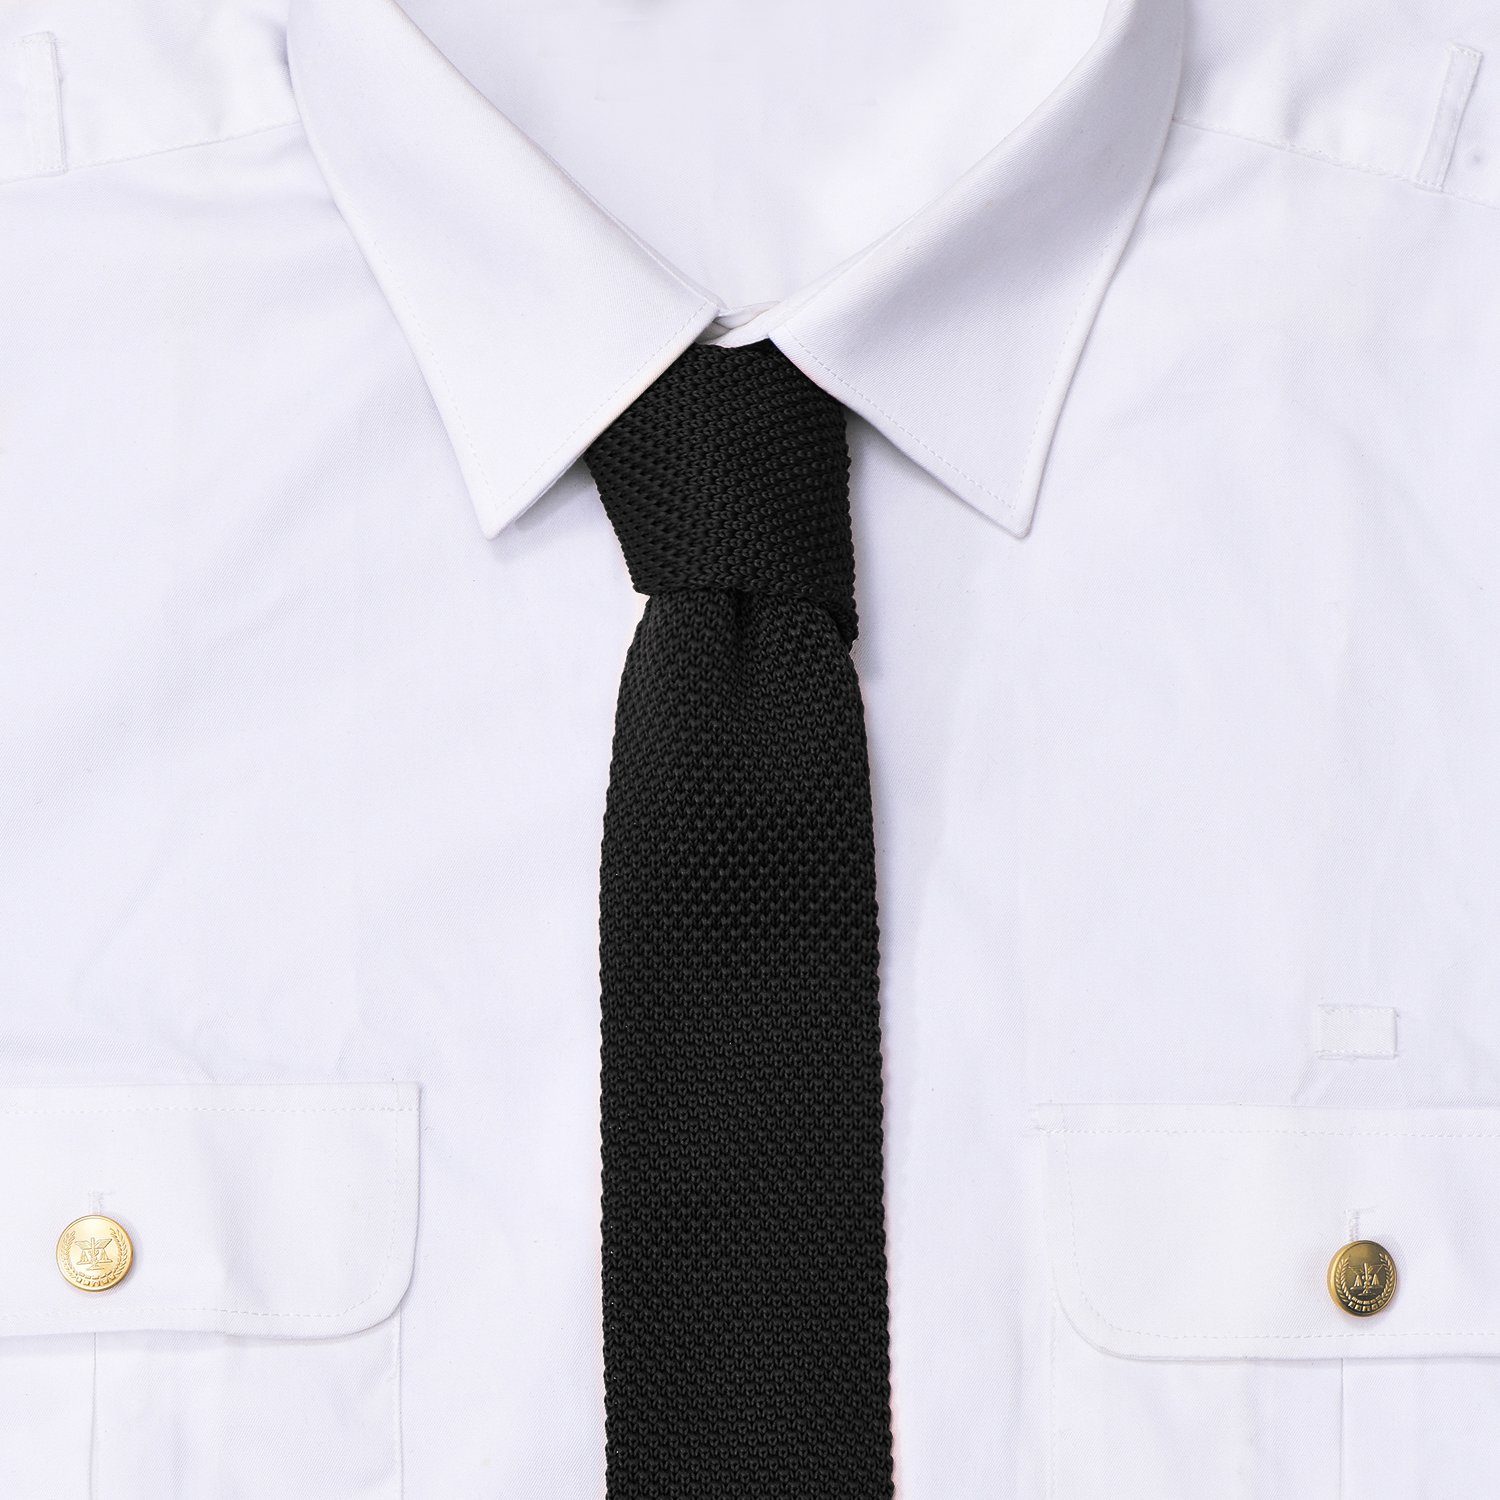 DonDon Krawatte schmale Krawatte Veranstaltungen (Packung, Wollkrawatte Retro-Look, cm oder Büro 5 für Strickkrawatte, festliche 1-St) schwarz